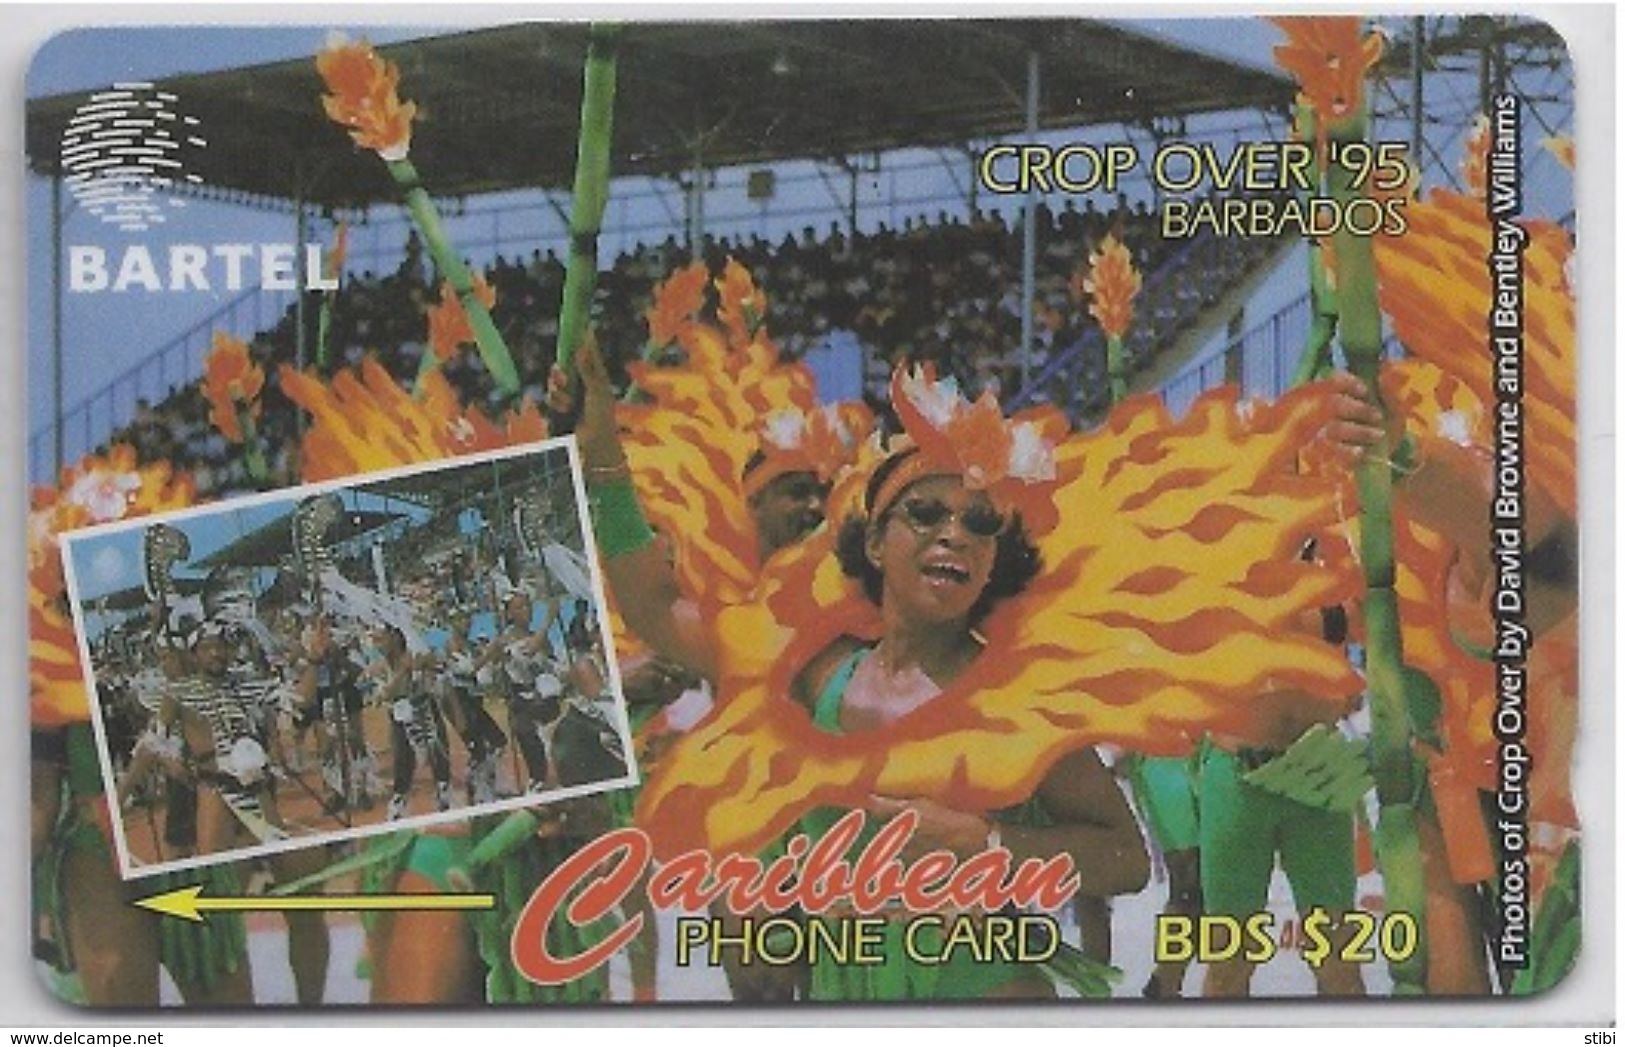 BARBADOS - CROP OVER '95 - 88CBDC - Barbades